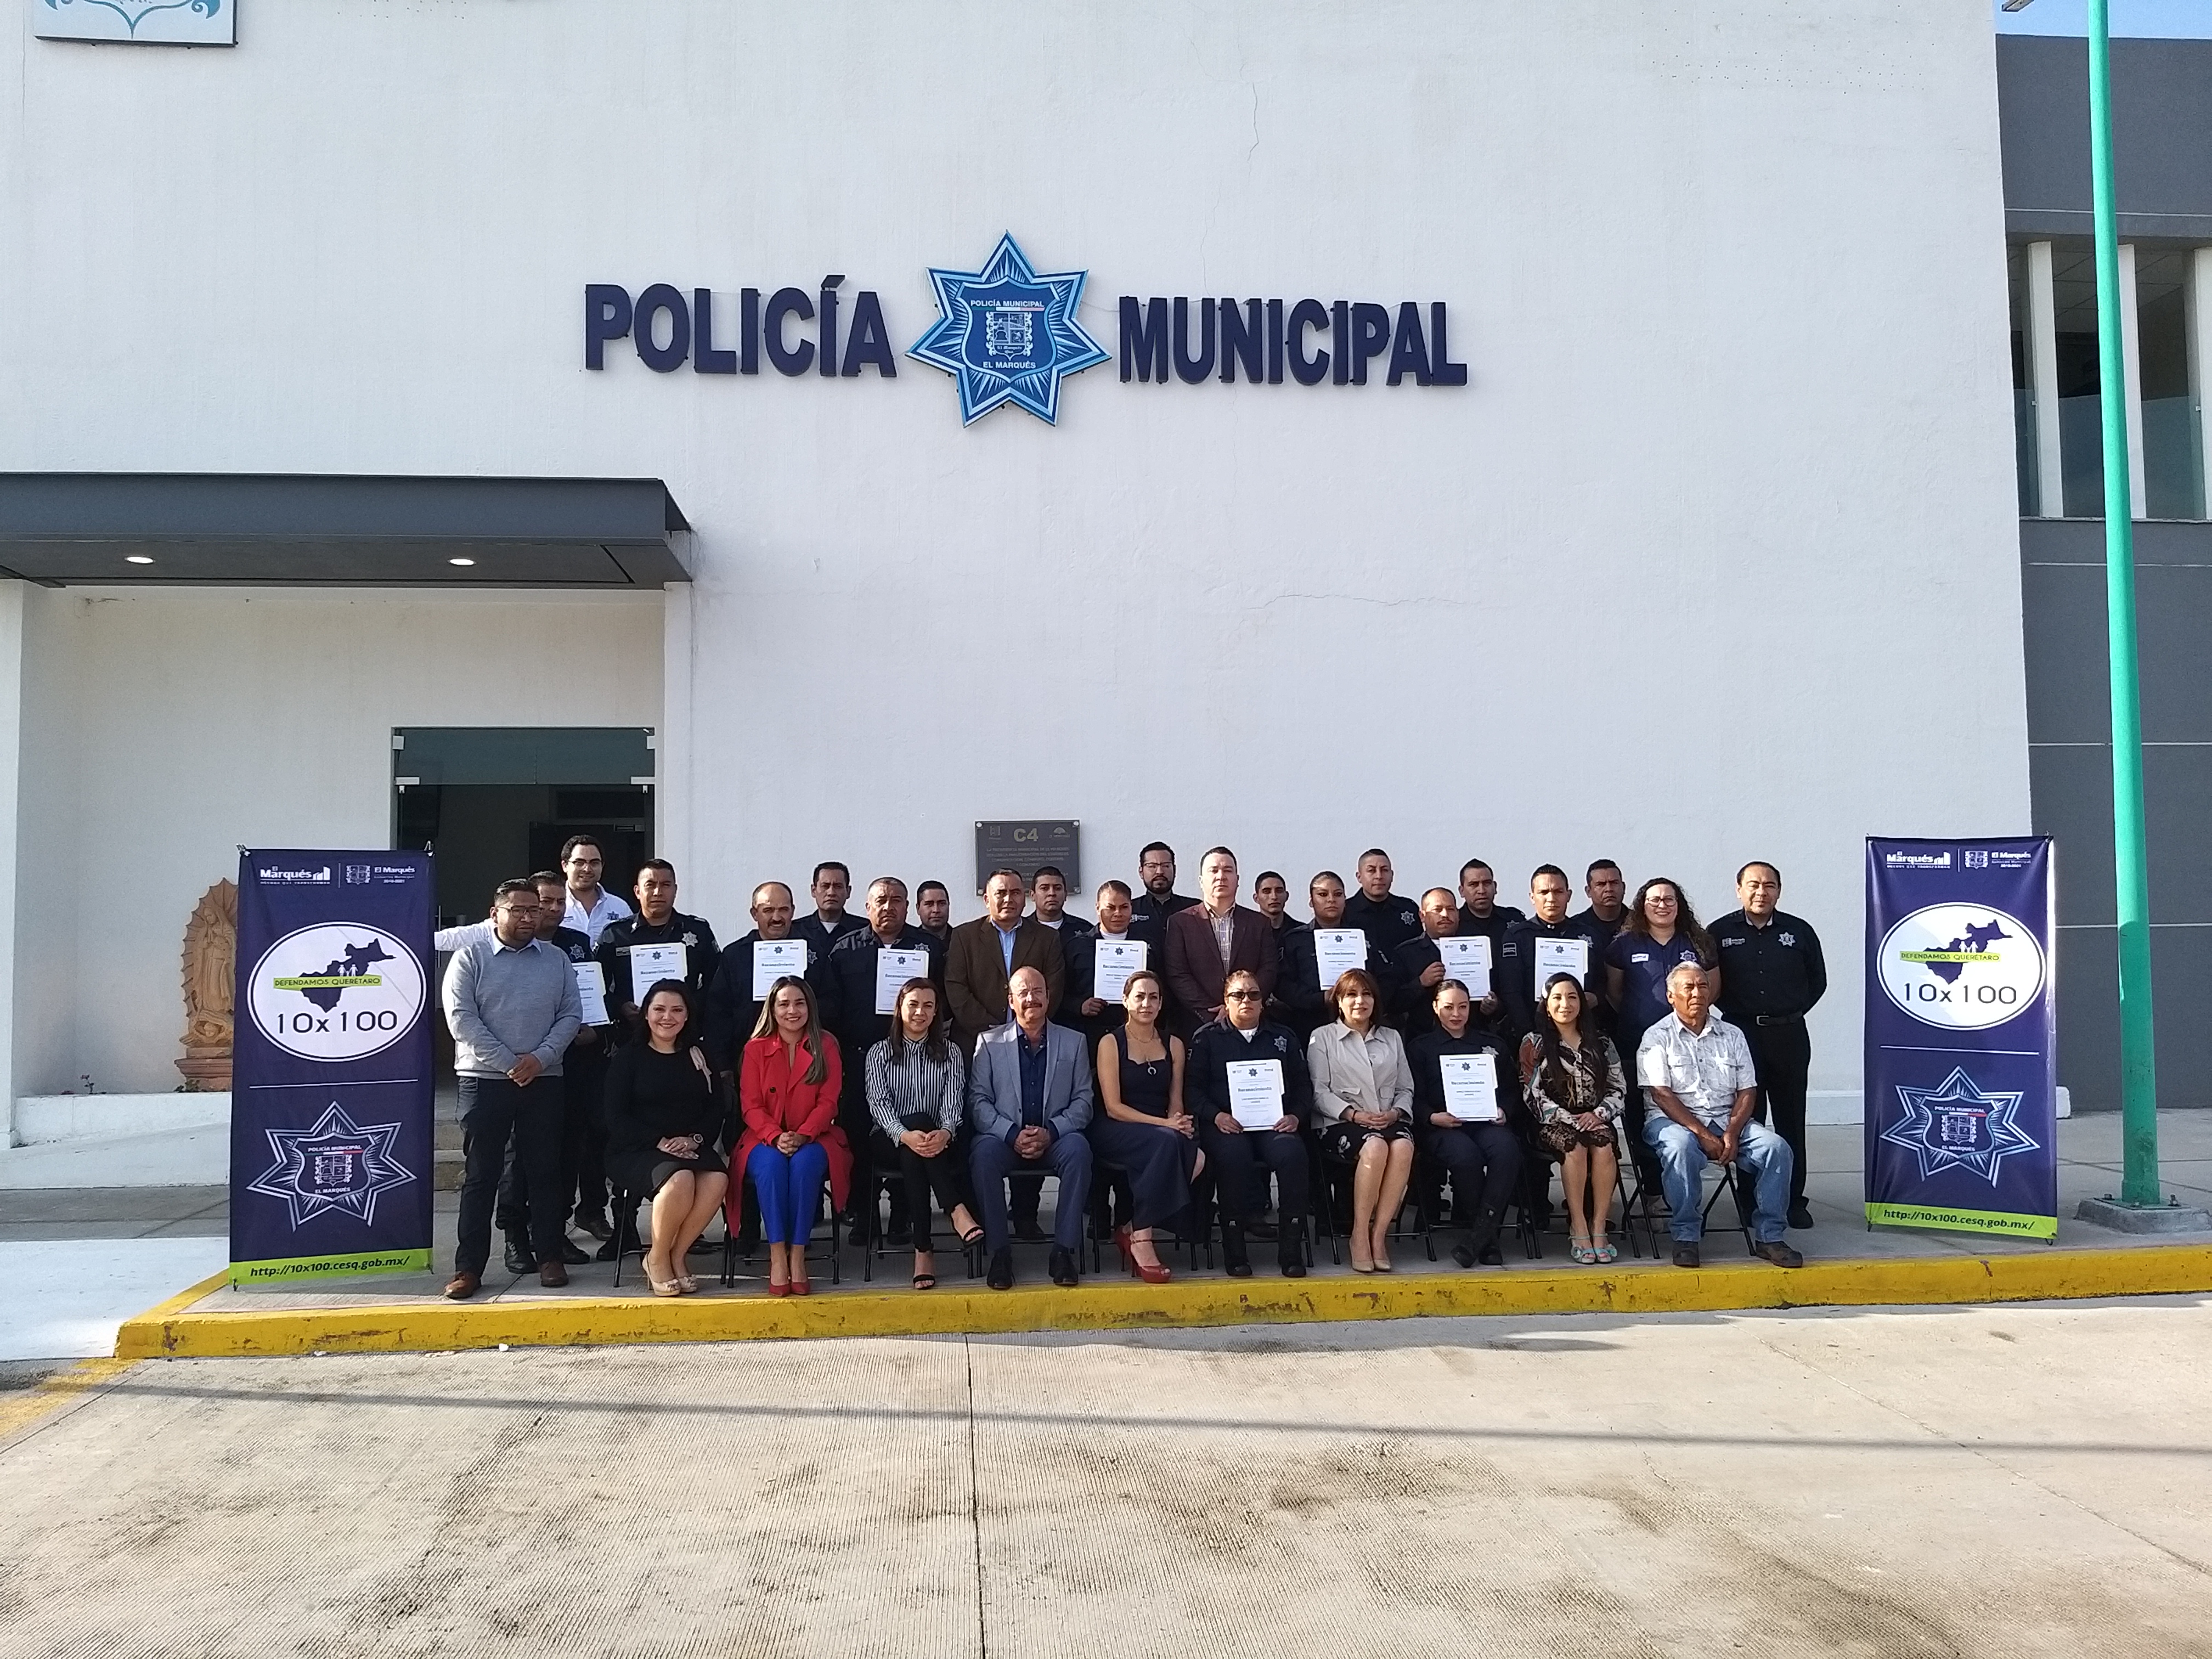  35 policías de El Marqués reciben reconocimientos por su desempeño